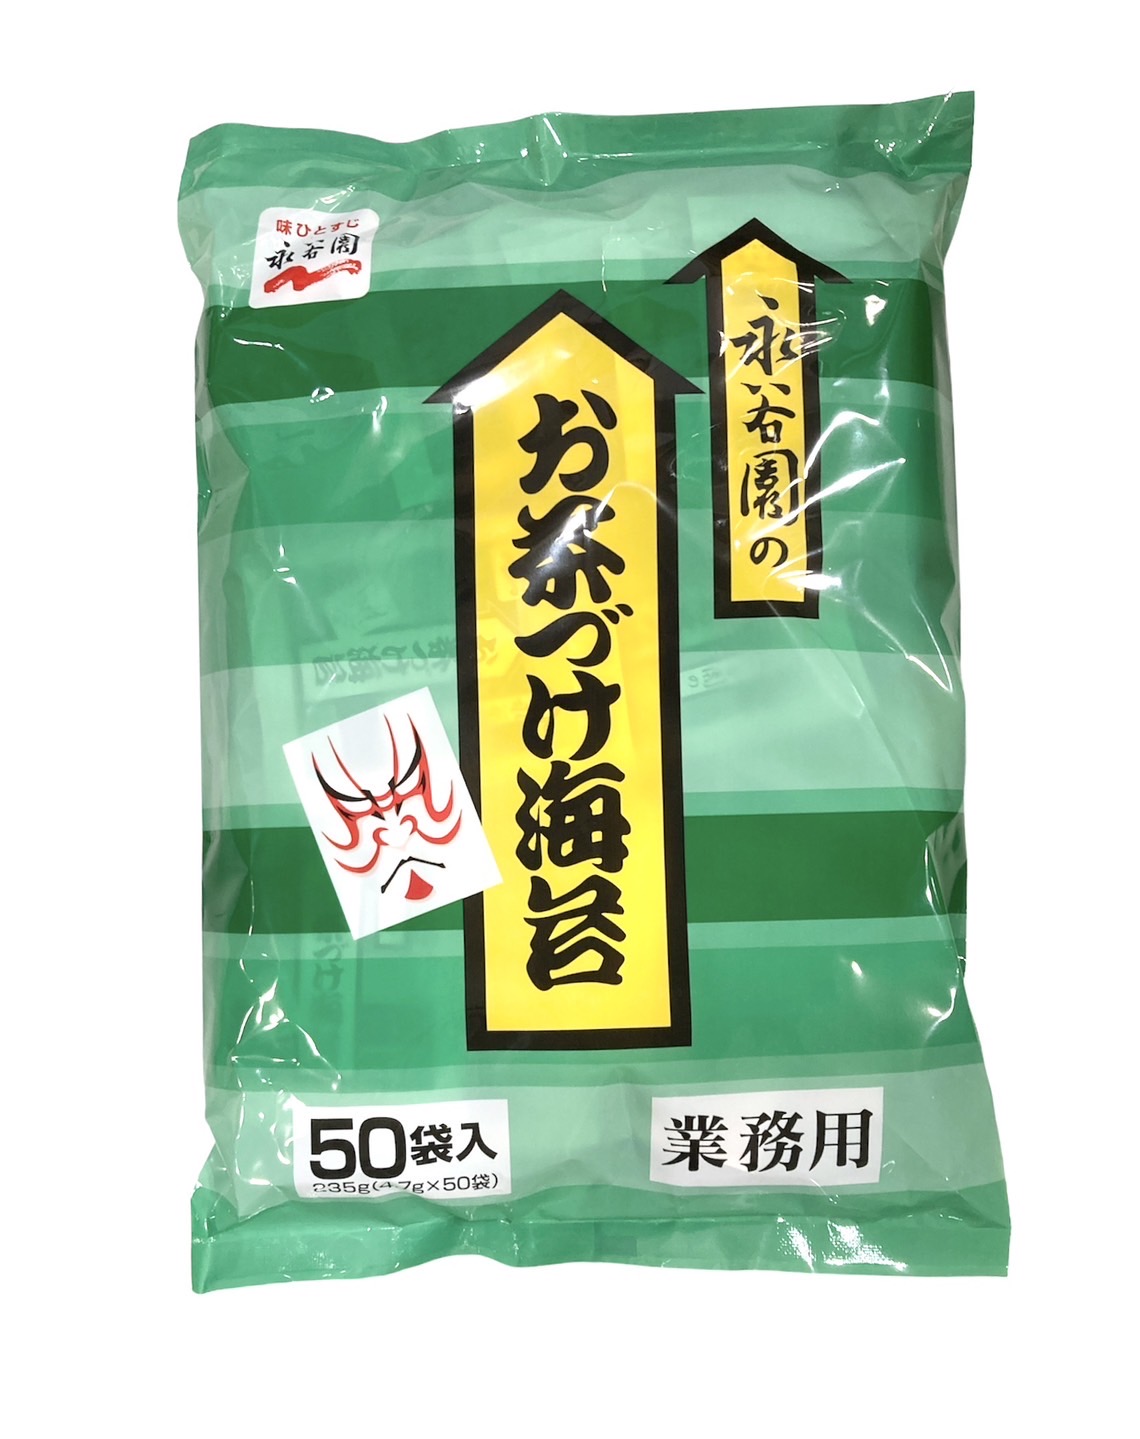 ... чай .. водоросли 50 пакет входить для бизнеса большая вместимость Отядзукэ клей выгода 